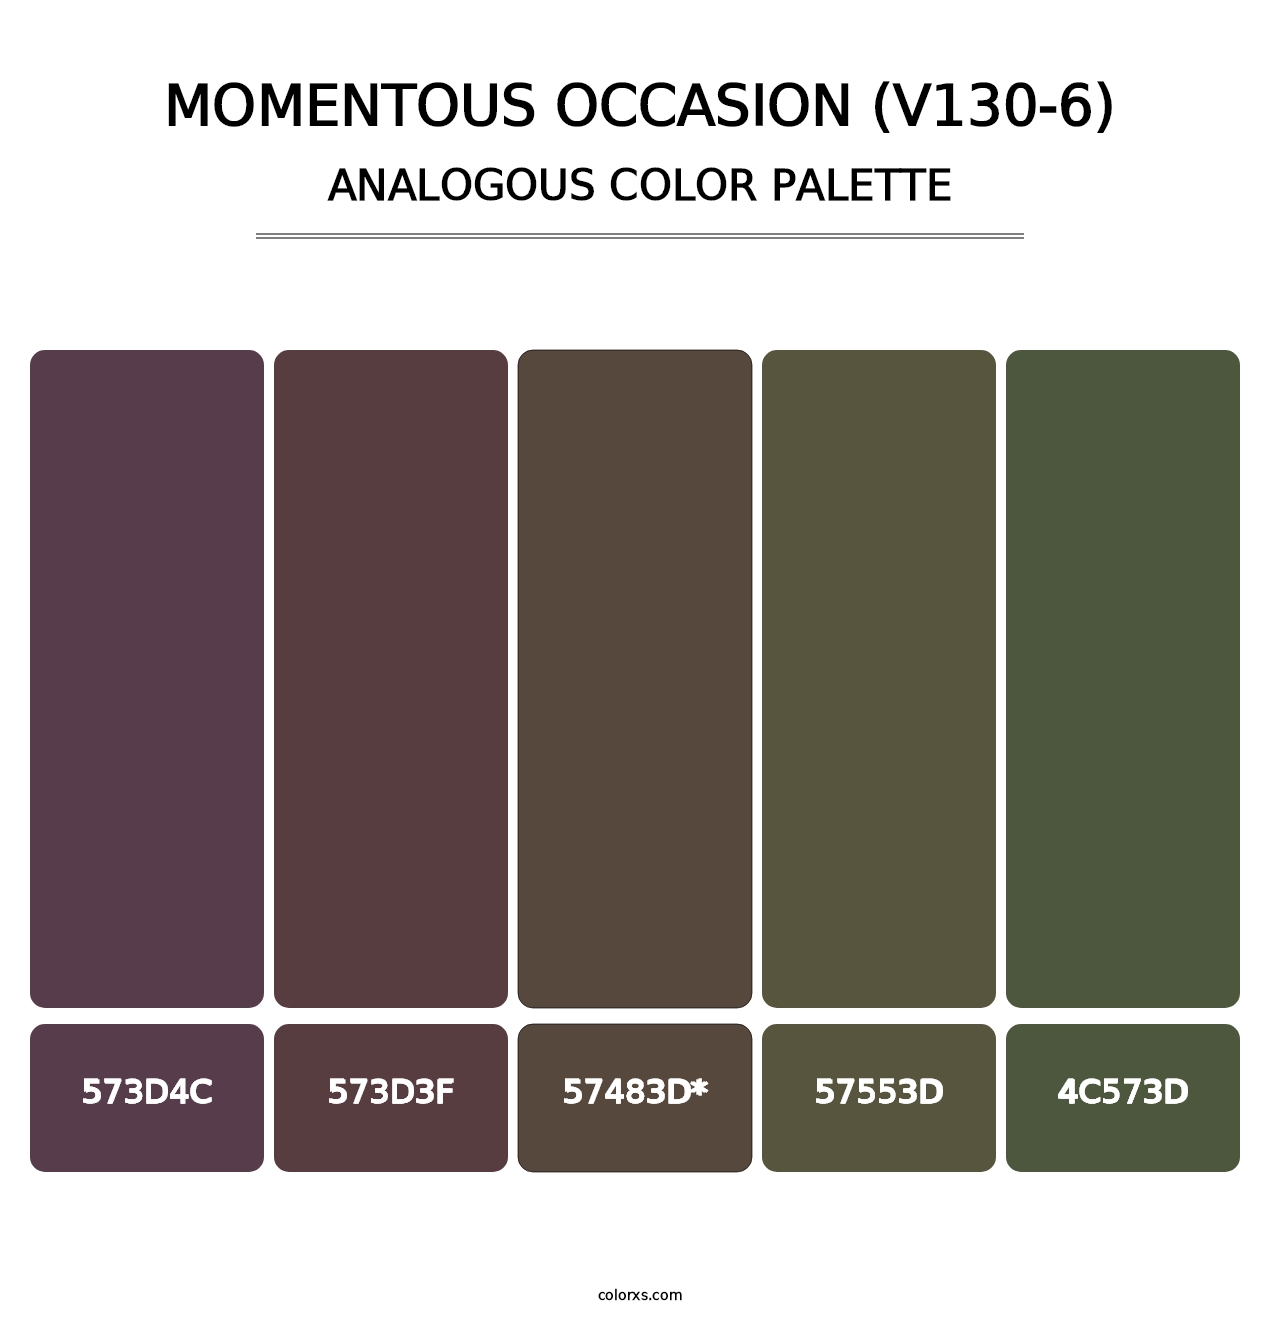 Momentous Occasion (V130-6) - Analogous Color Palette